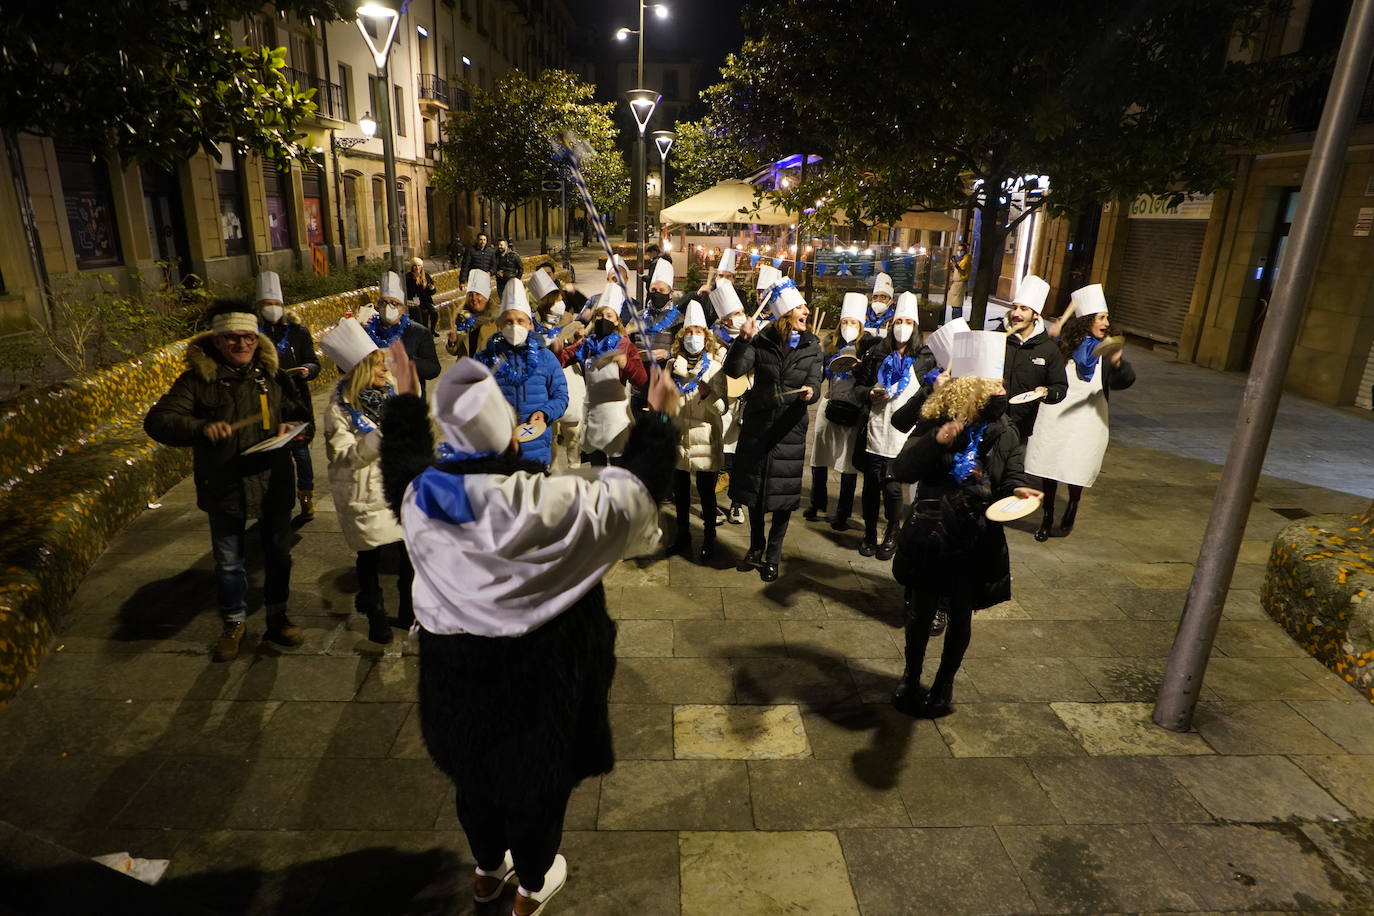 La fiesta de San Sebastián se abre paso entre restricciones